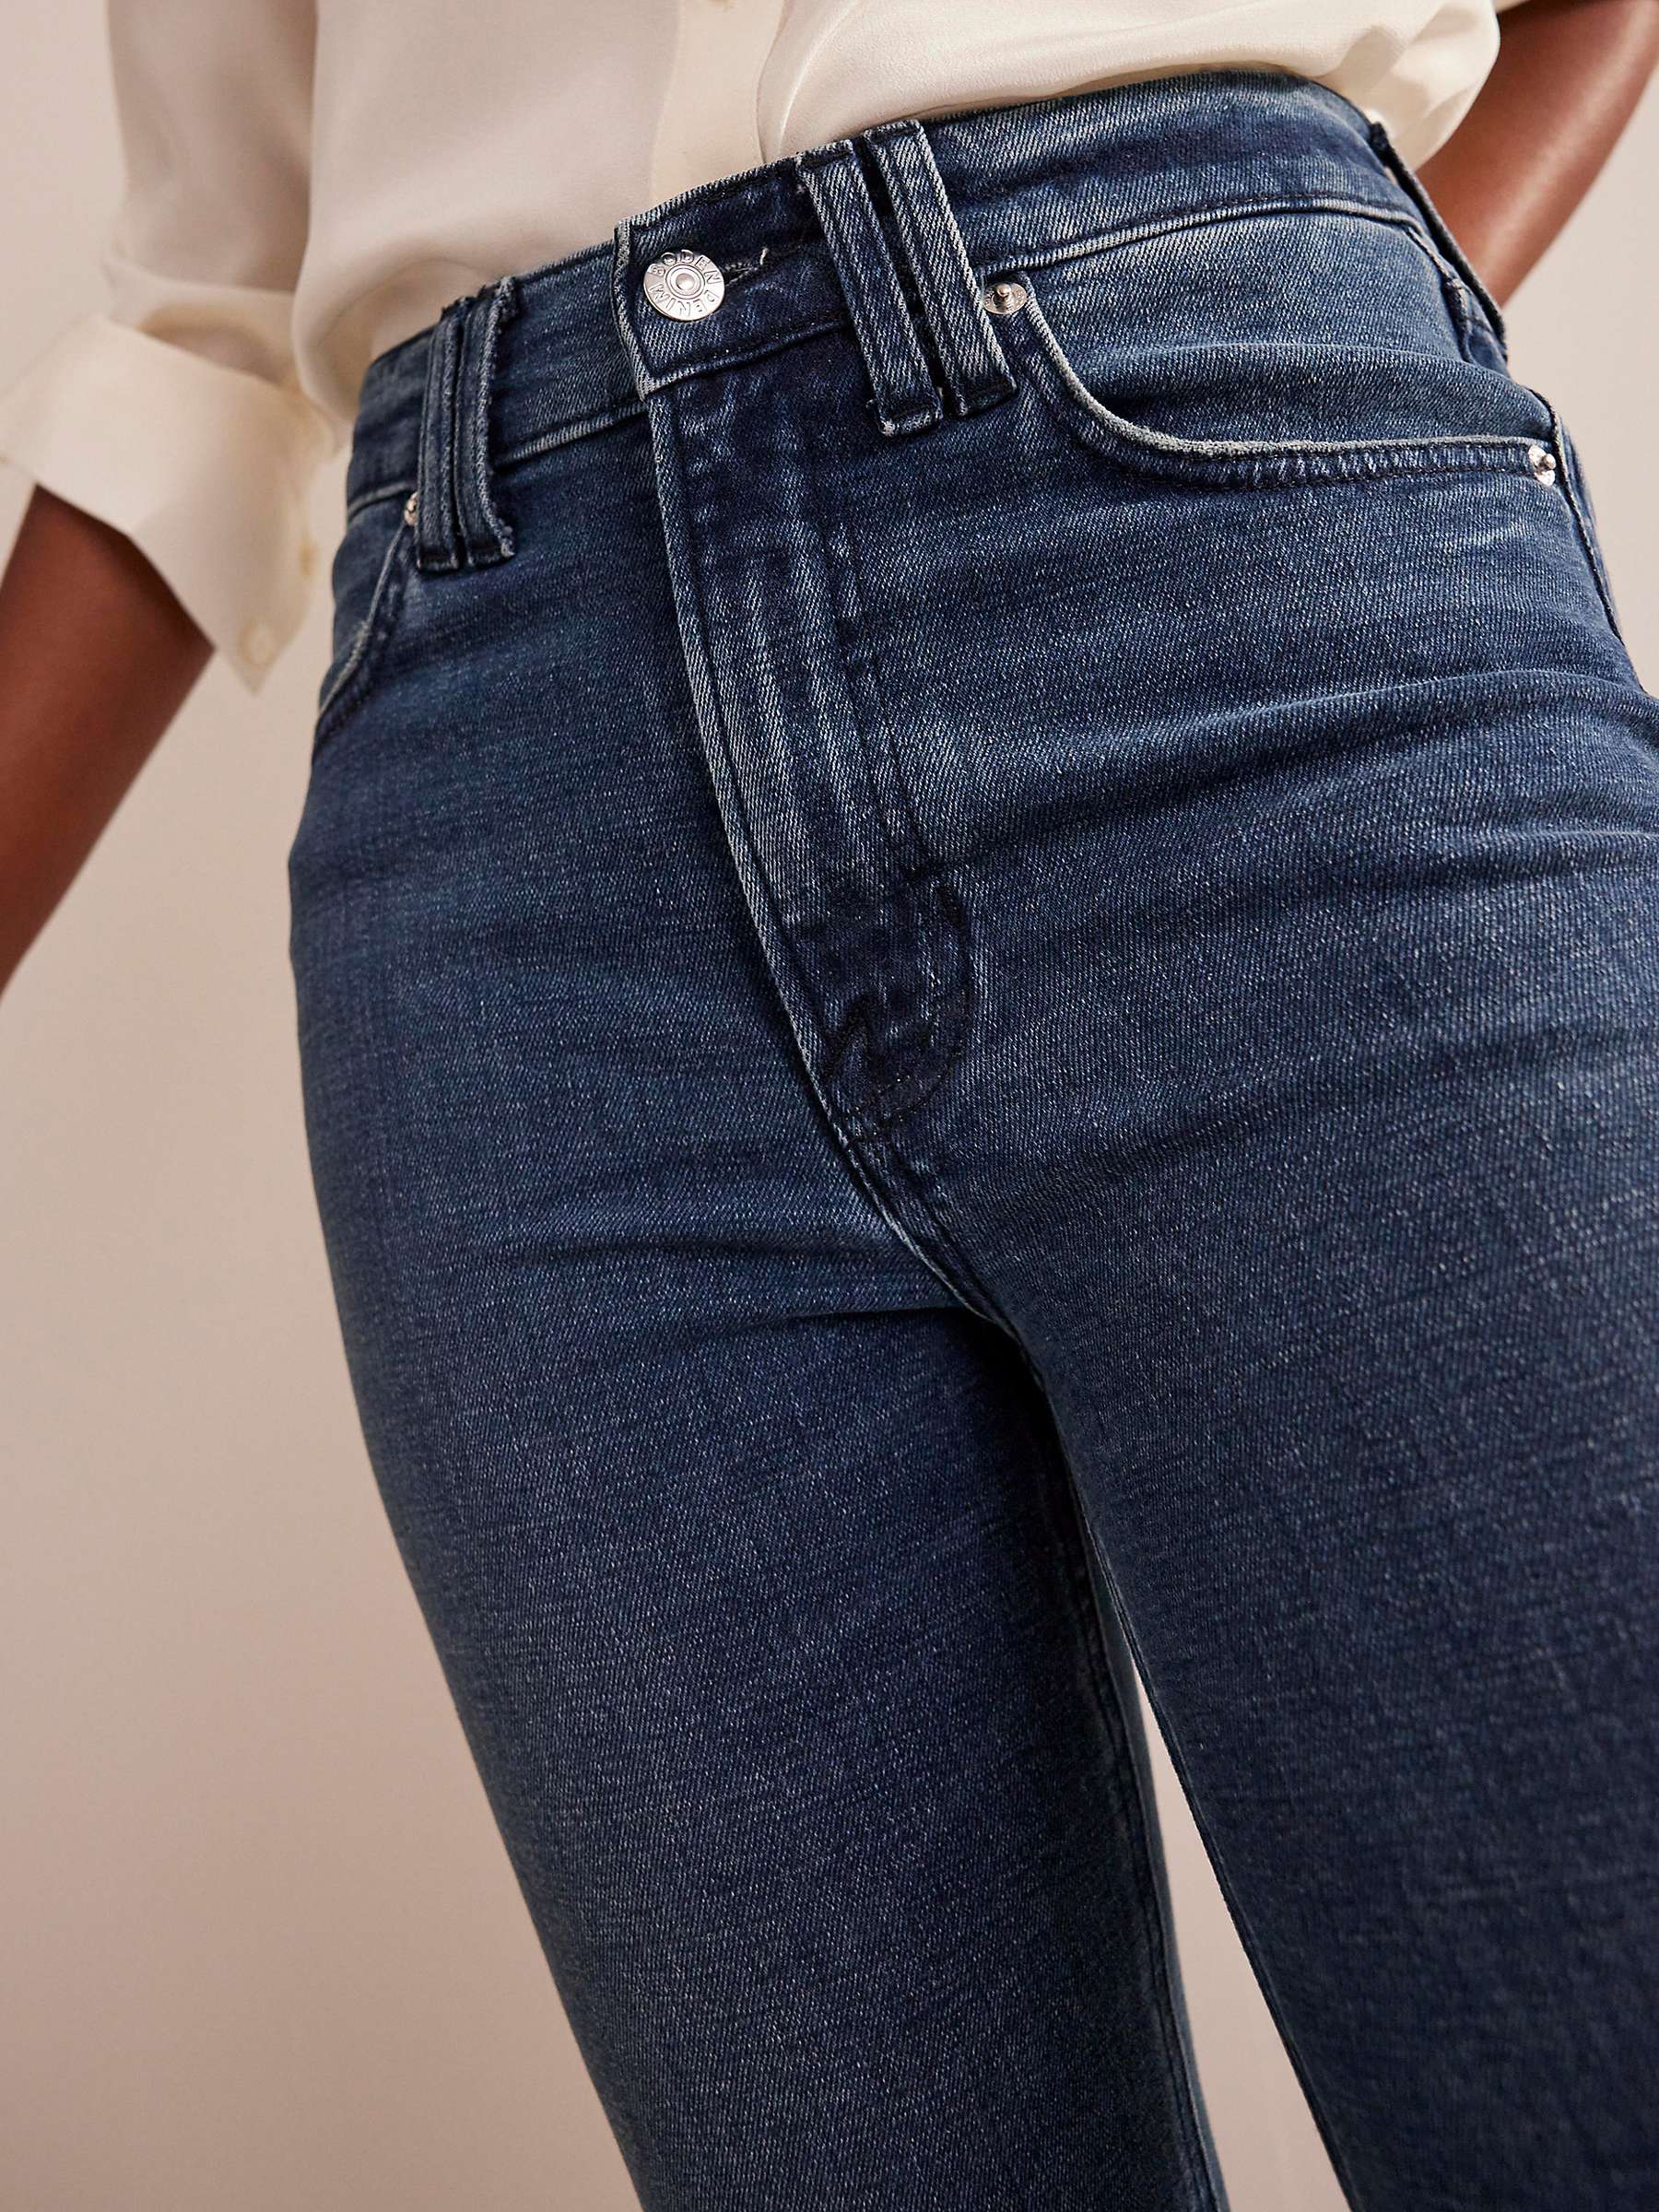 Buy Boden Mid-Rise Slim Flare Jeans, Mid Vintage Online at johnlewis.com